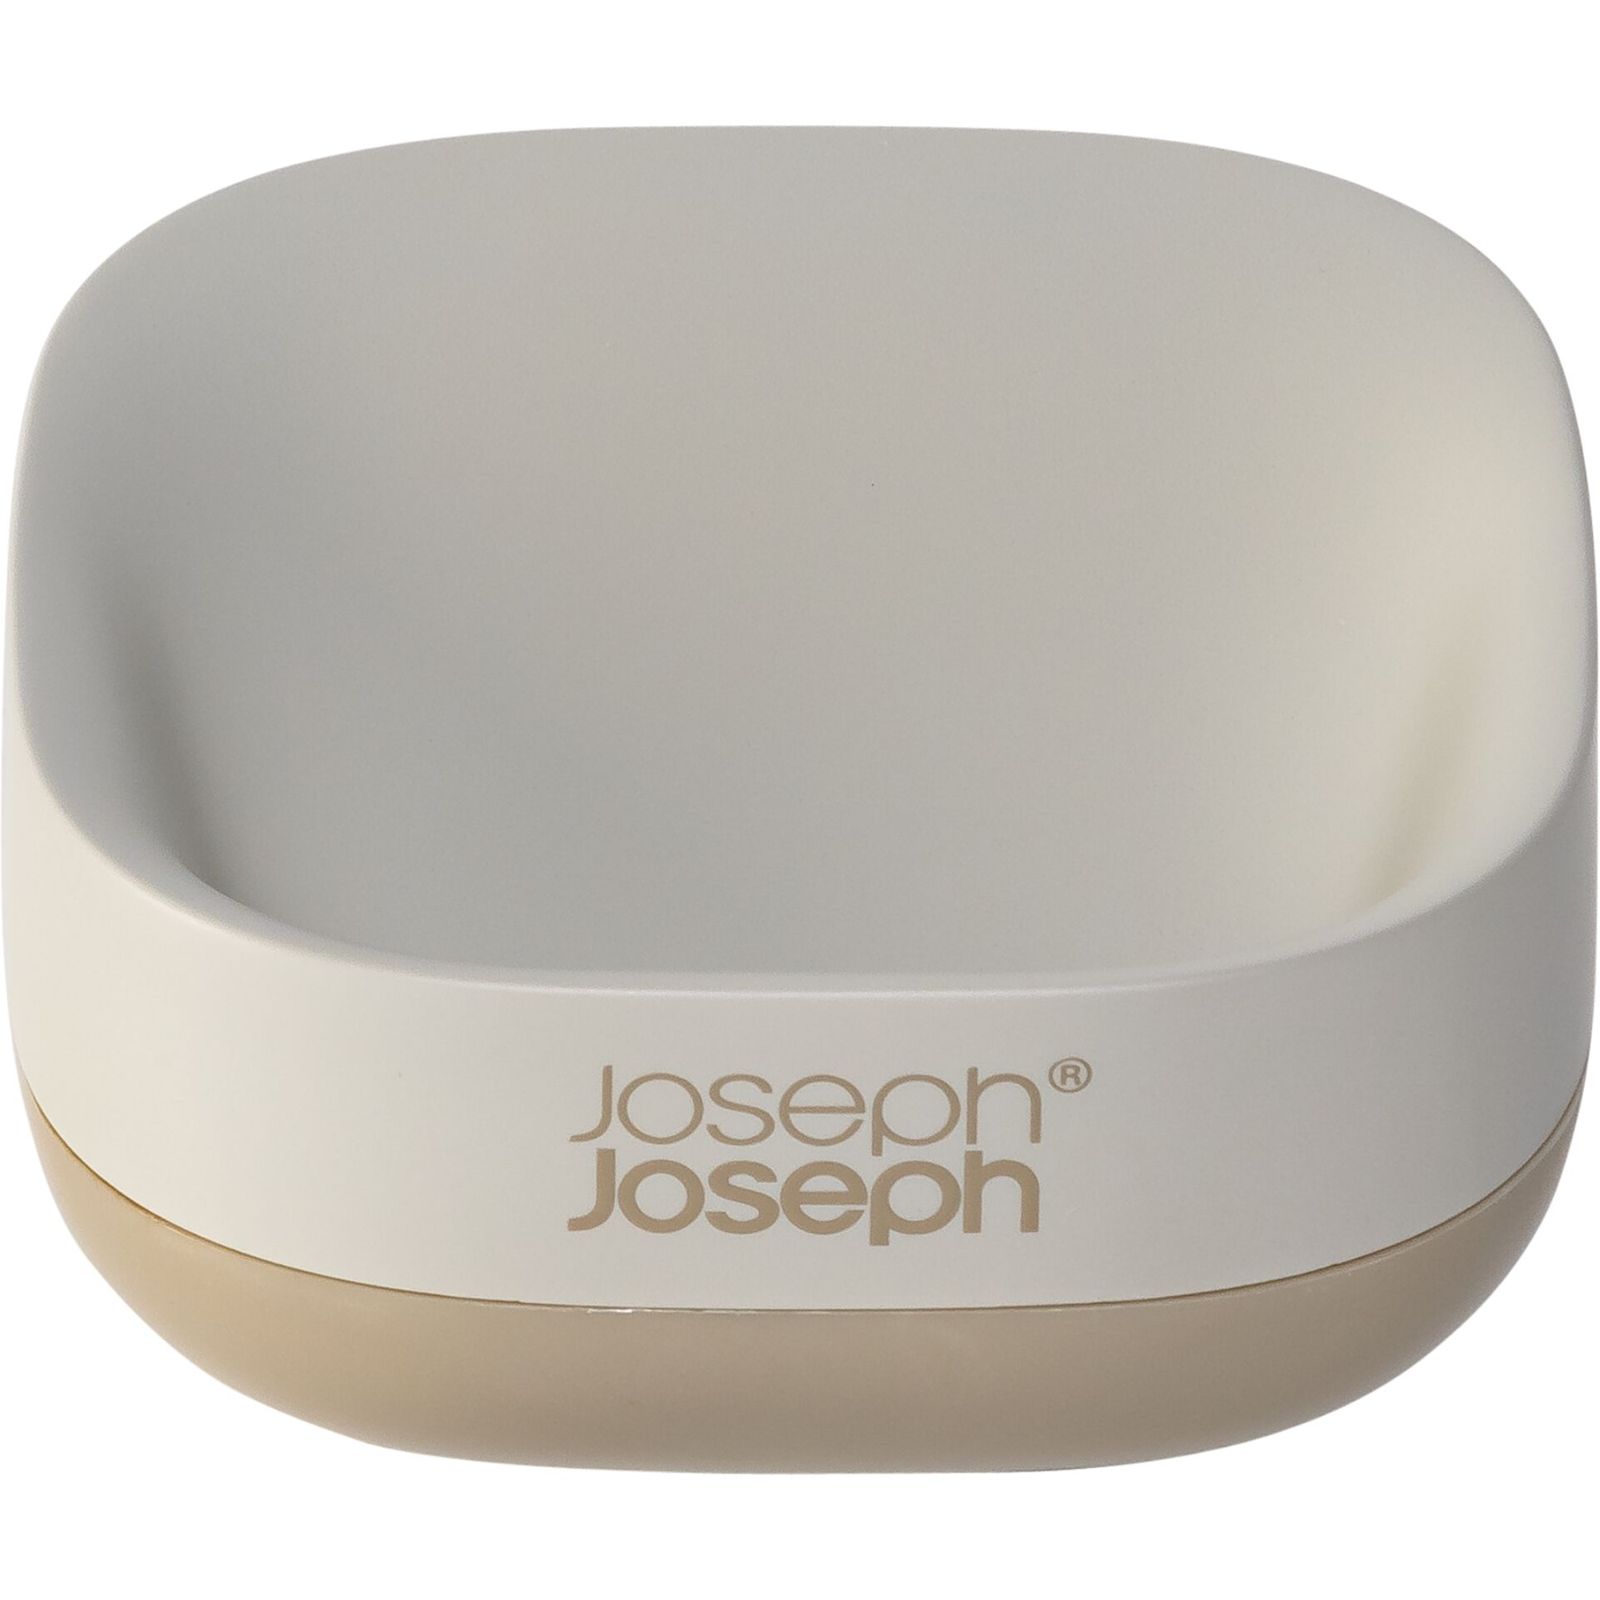 Joseph Joseph EasyStore porta saponetta opaco